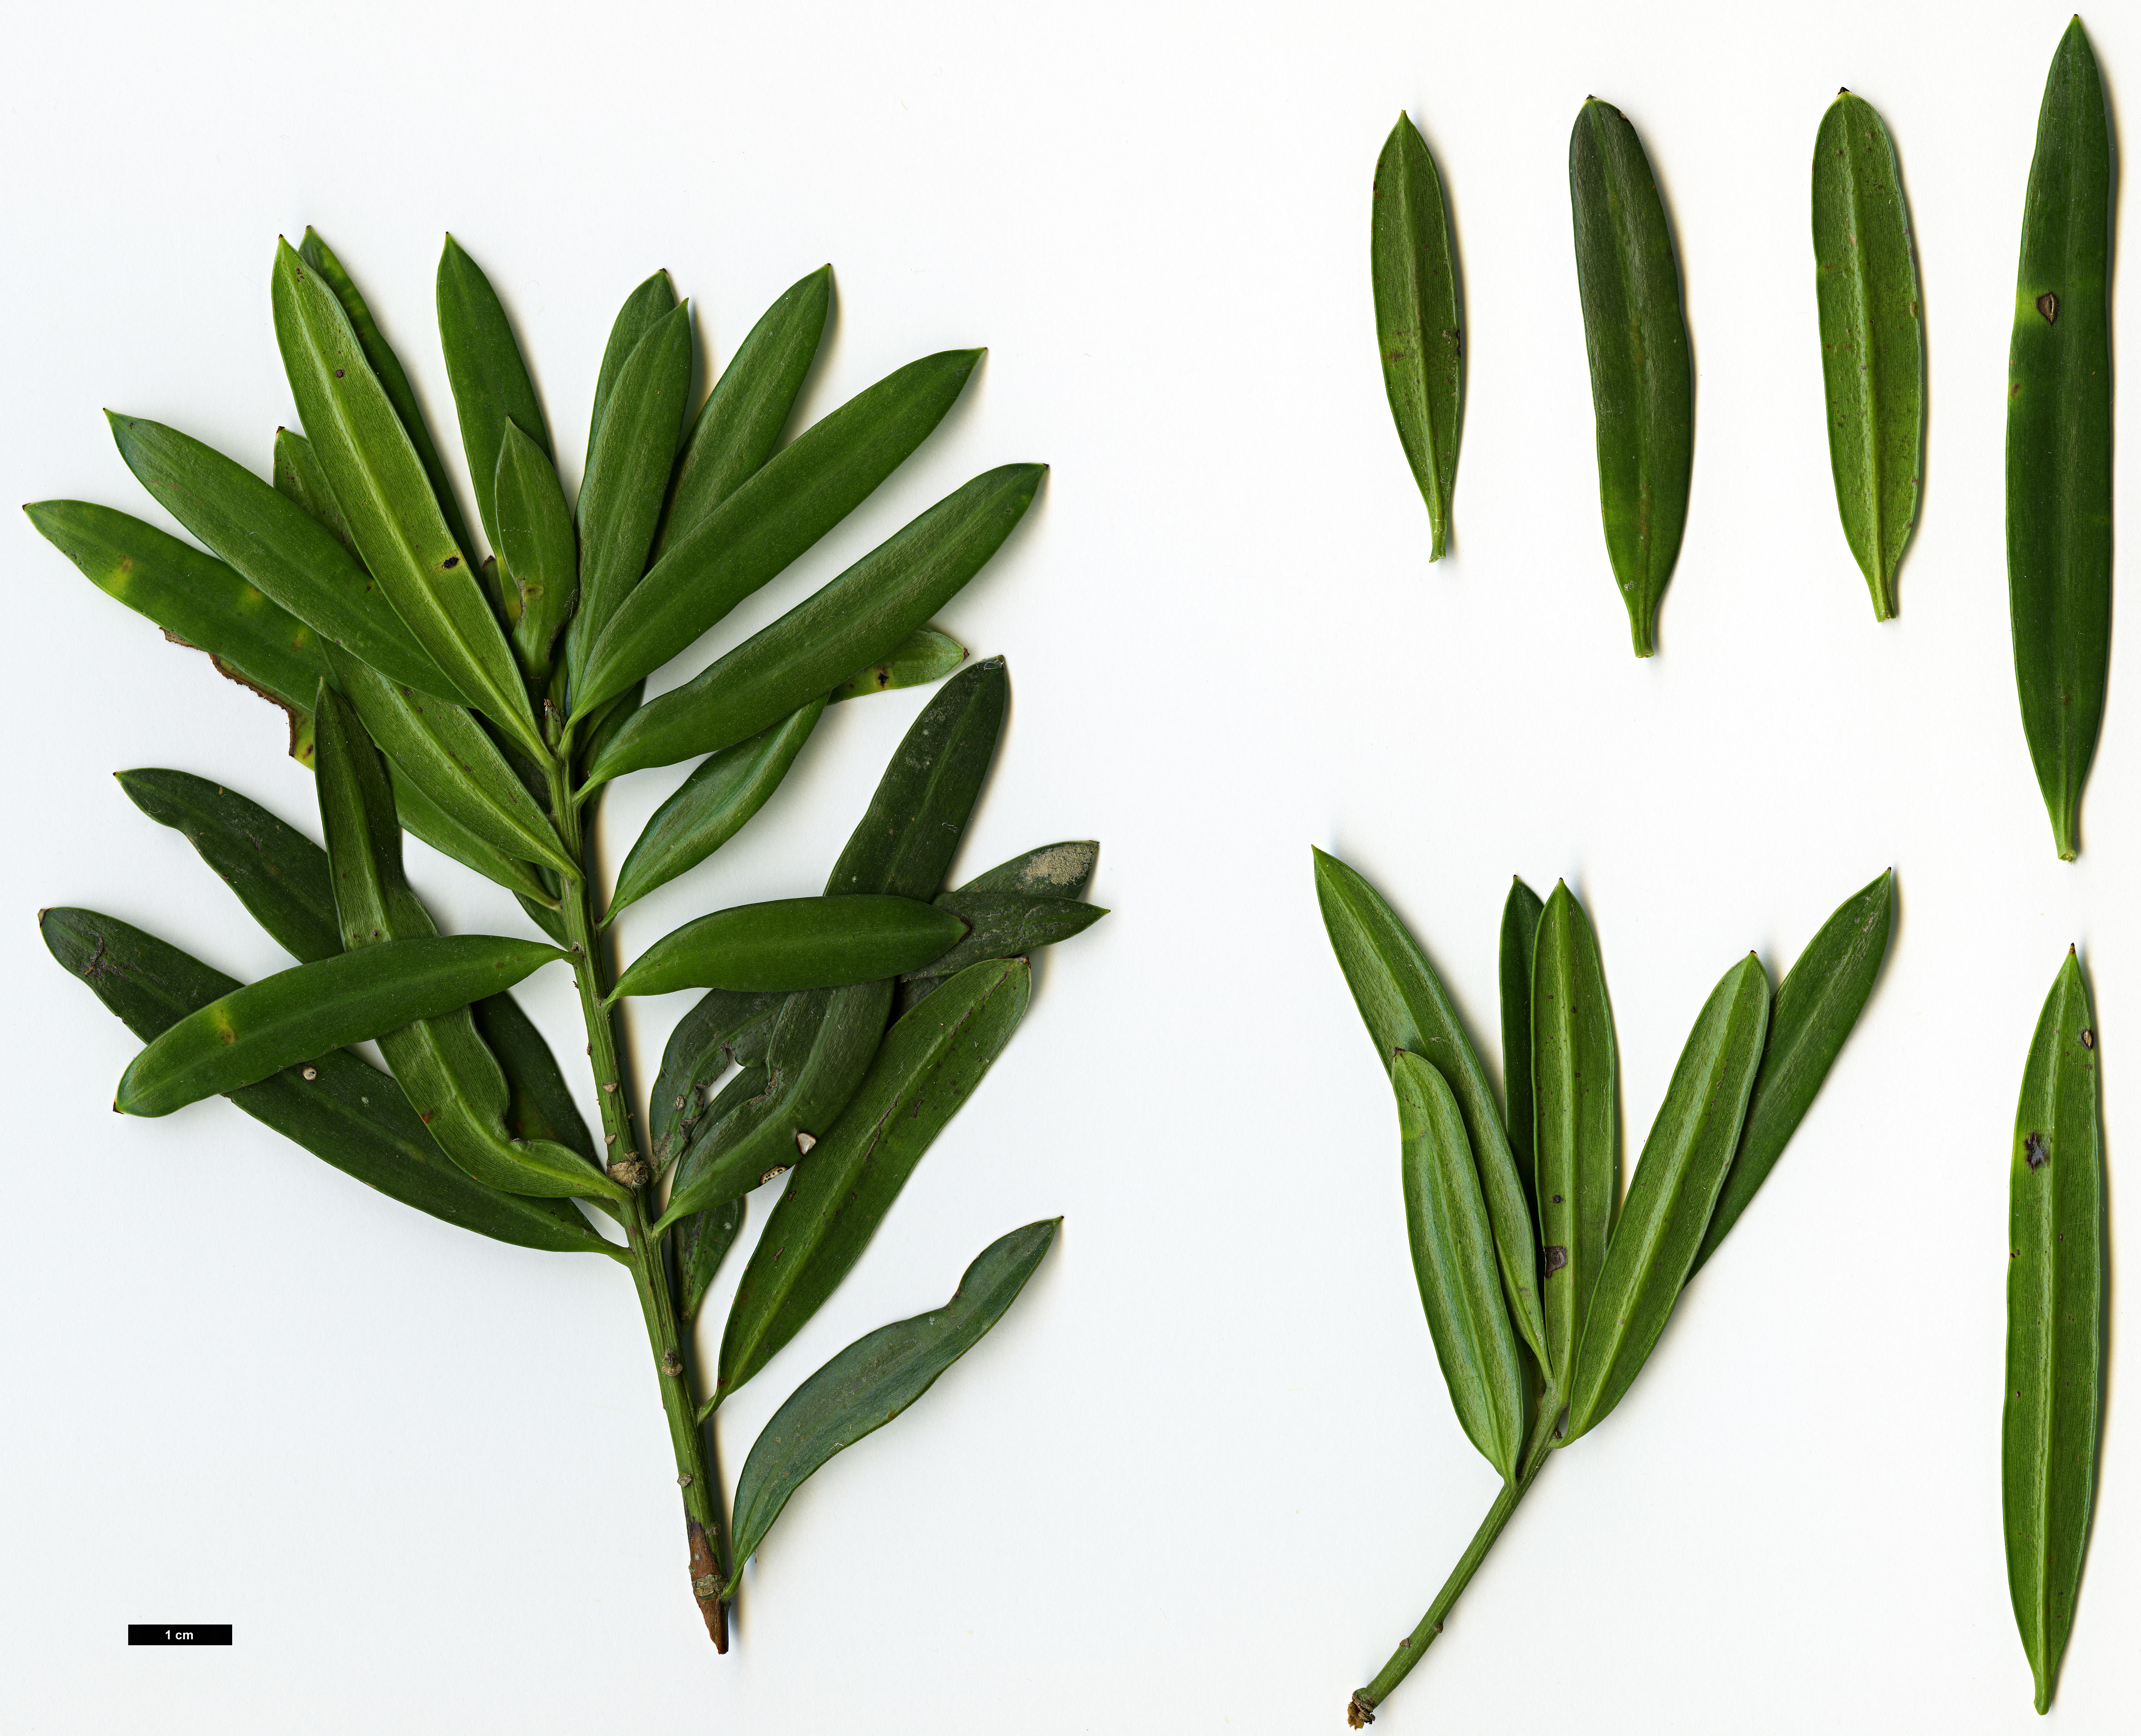 High resolution image: Family: Podocarpaceae - Genus: Podocarpus - Taxon: latifolius